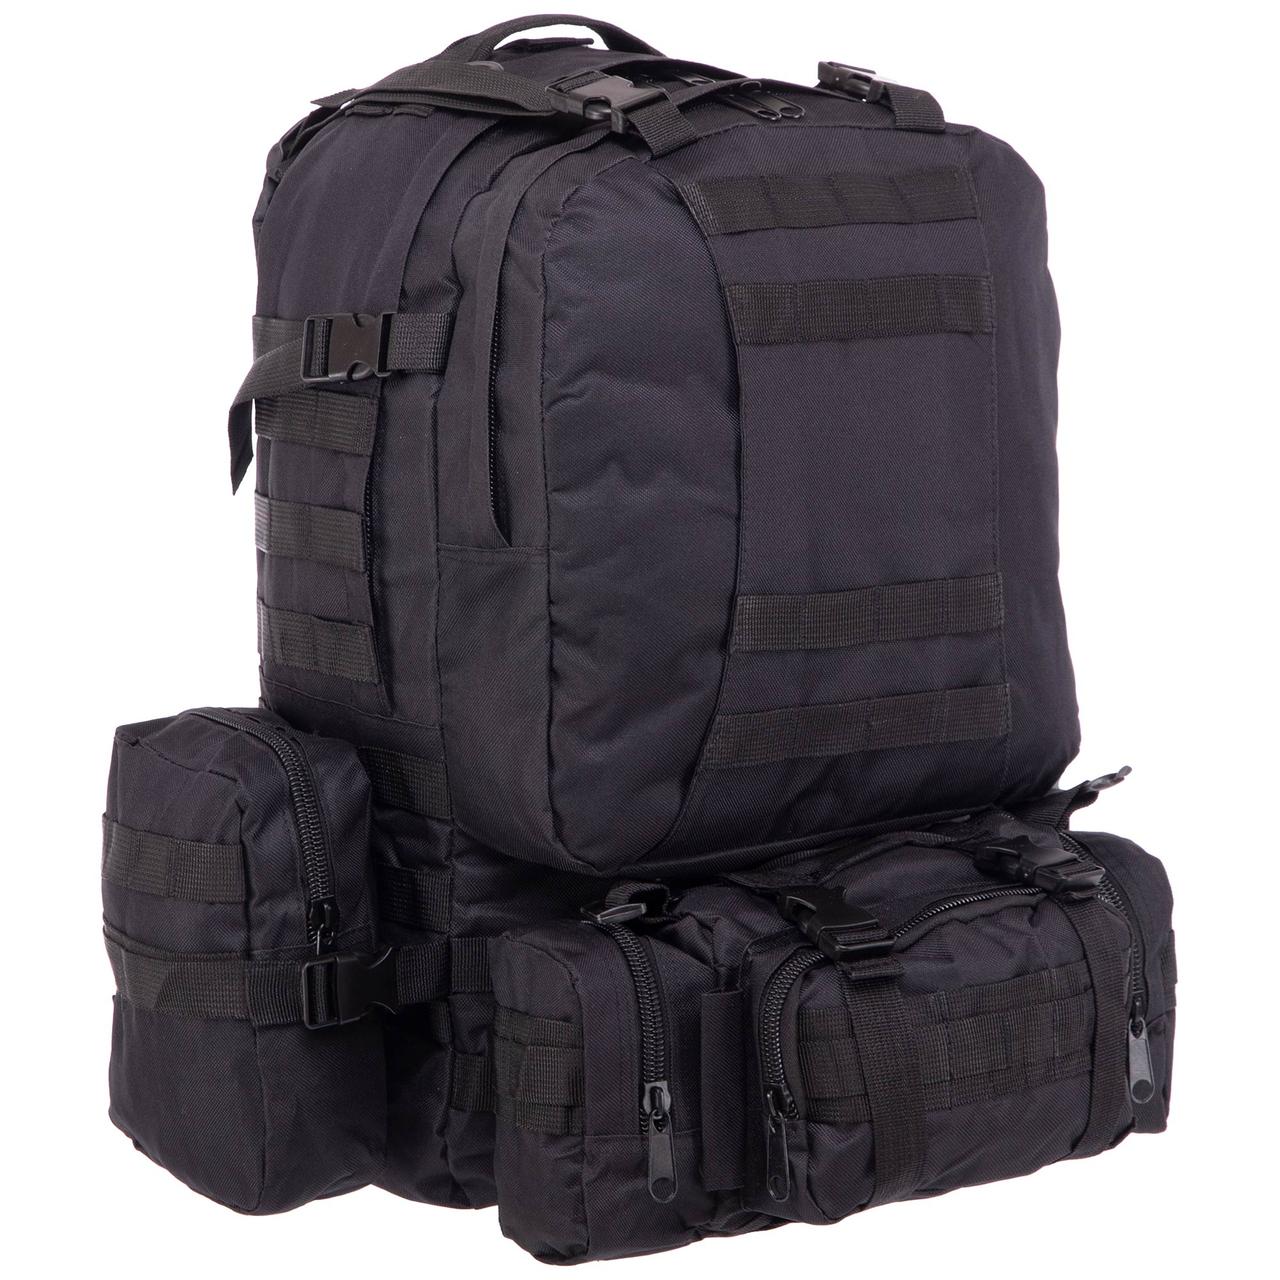 Великий військовий рюкзак чорний з підсумками 50-60 Літрів, Рейдовий рюкзак Silver Knight, Молі